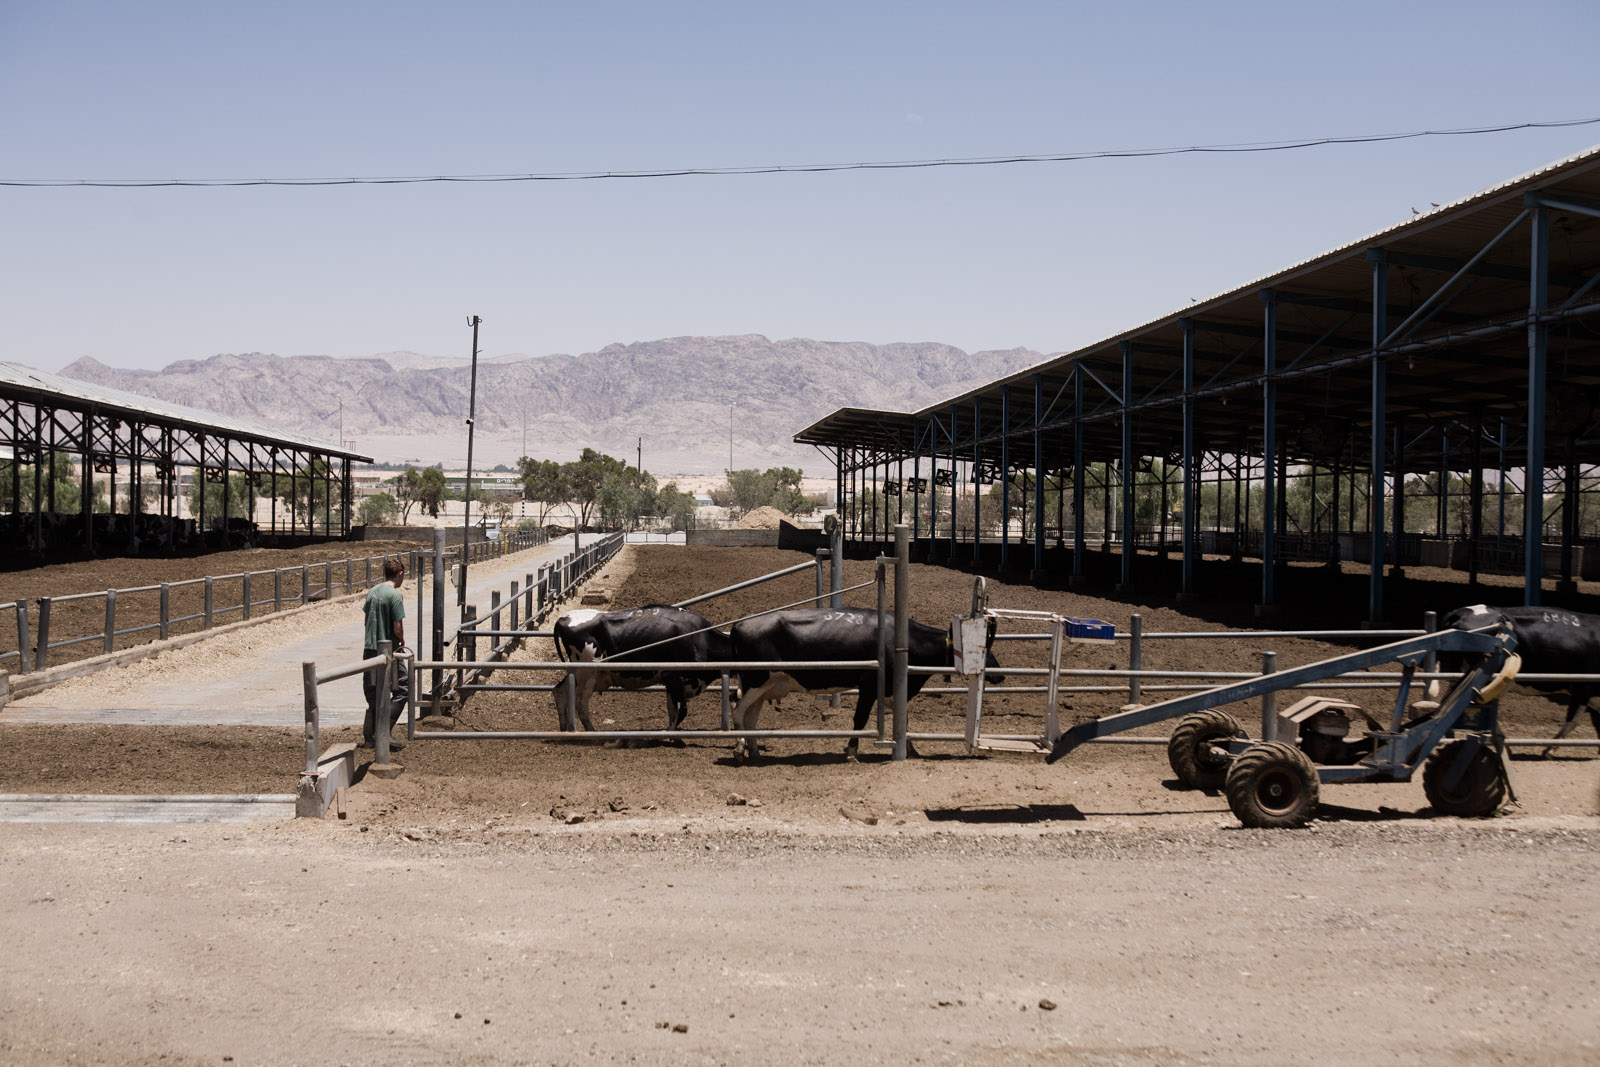 Les vaches du kibutz, avant la traite sont abritées du soleil du désert.